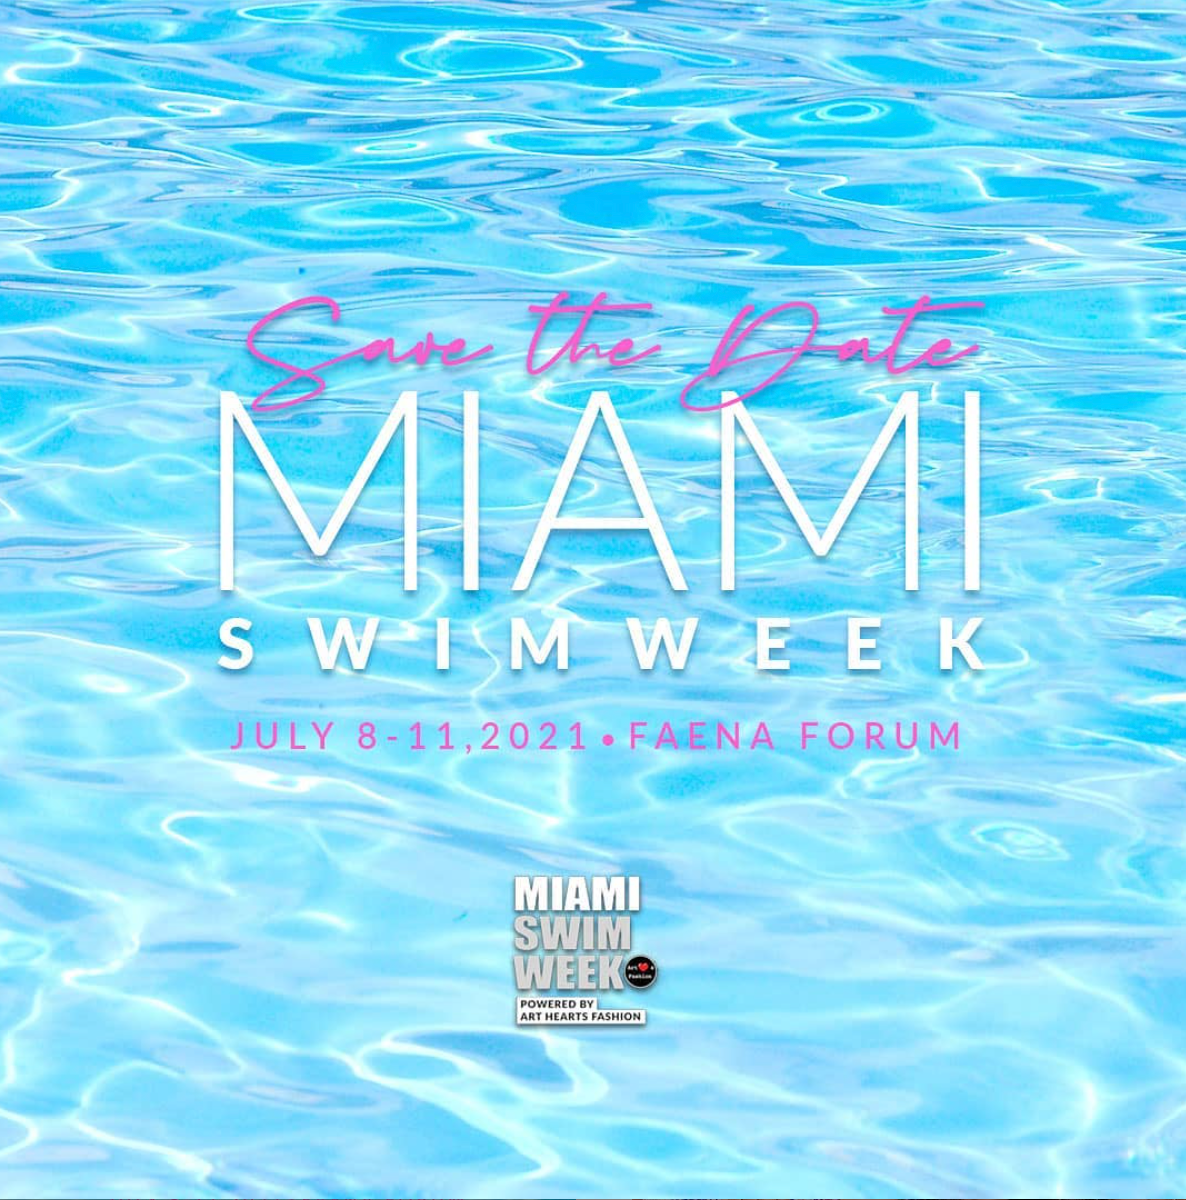 Miami Swim Week is BACK!